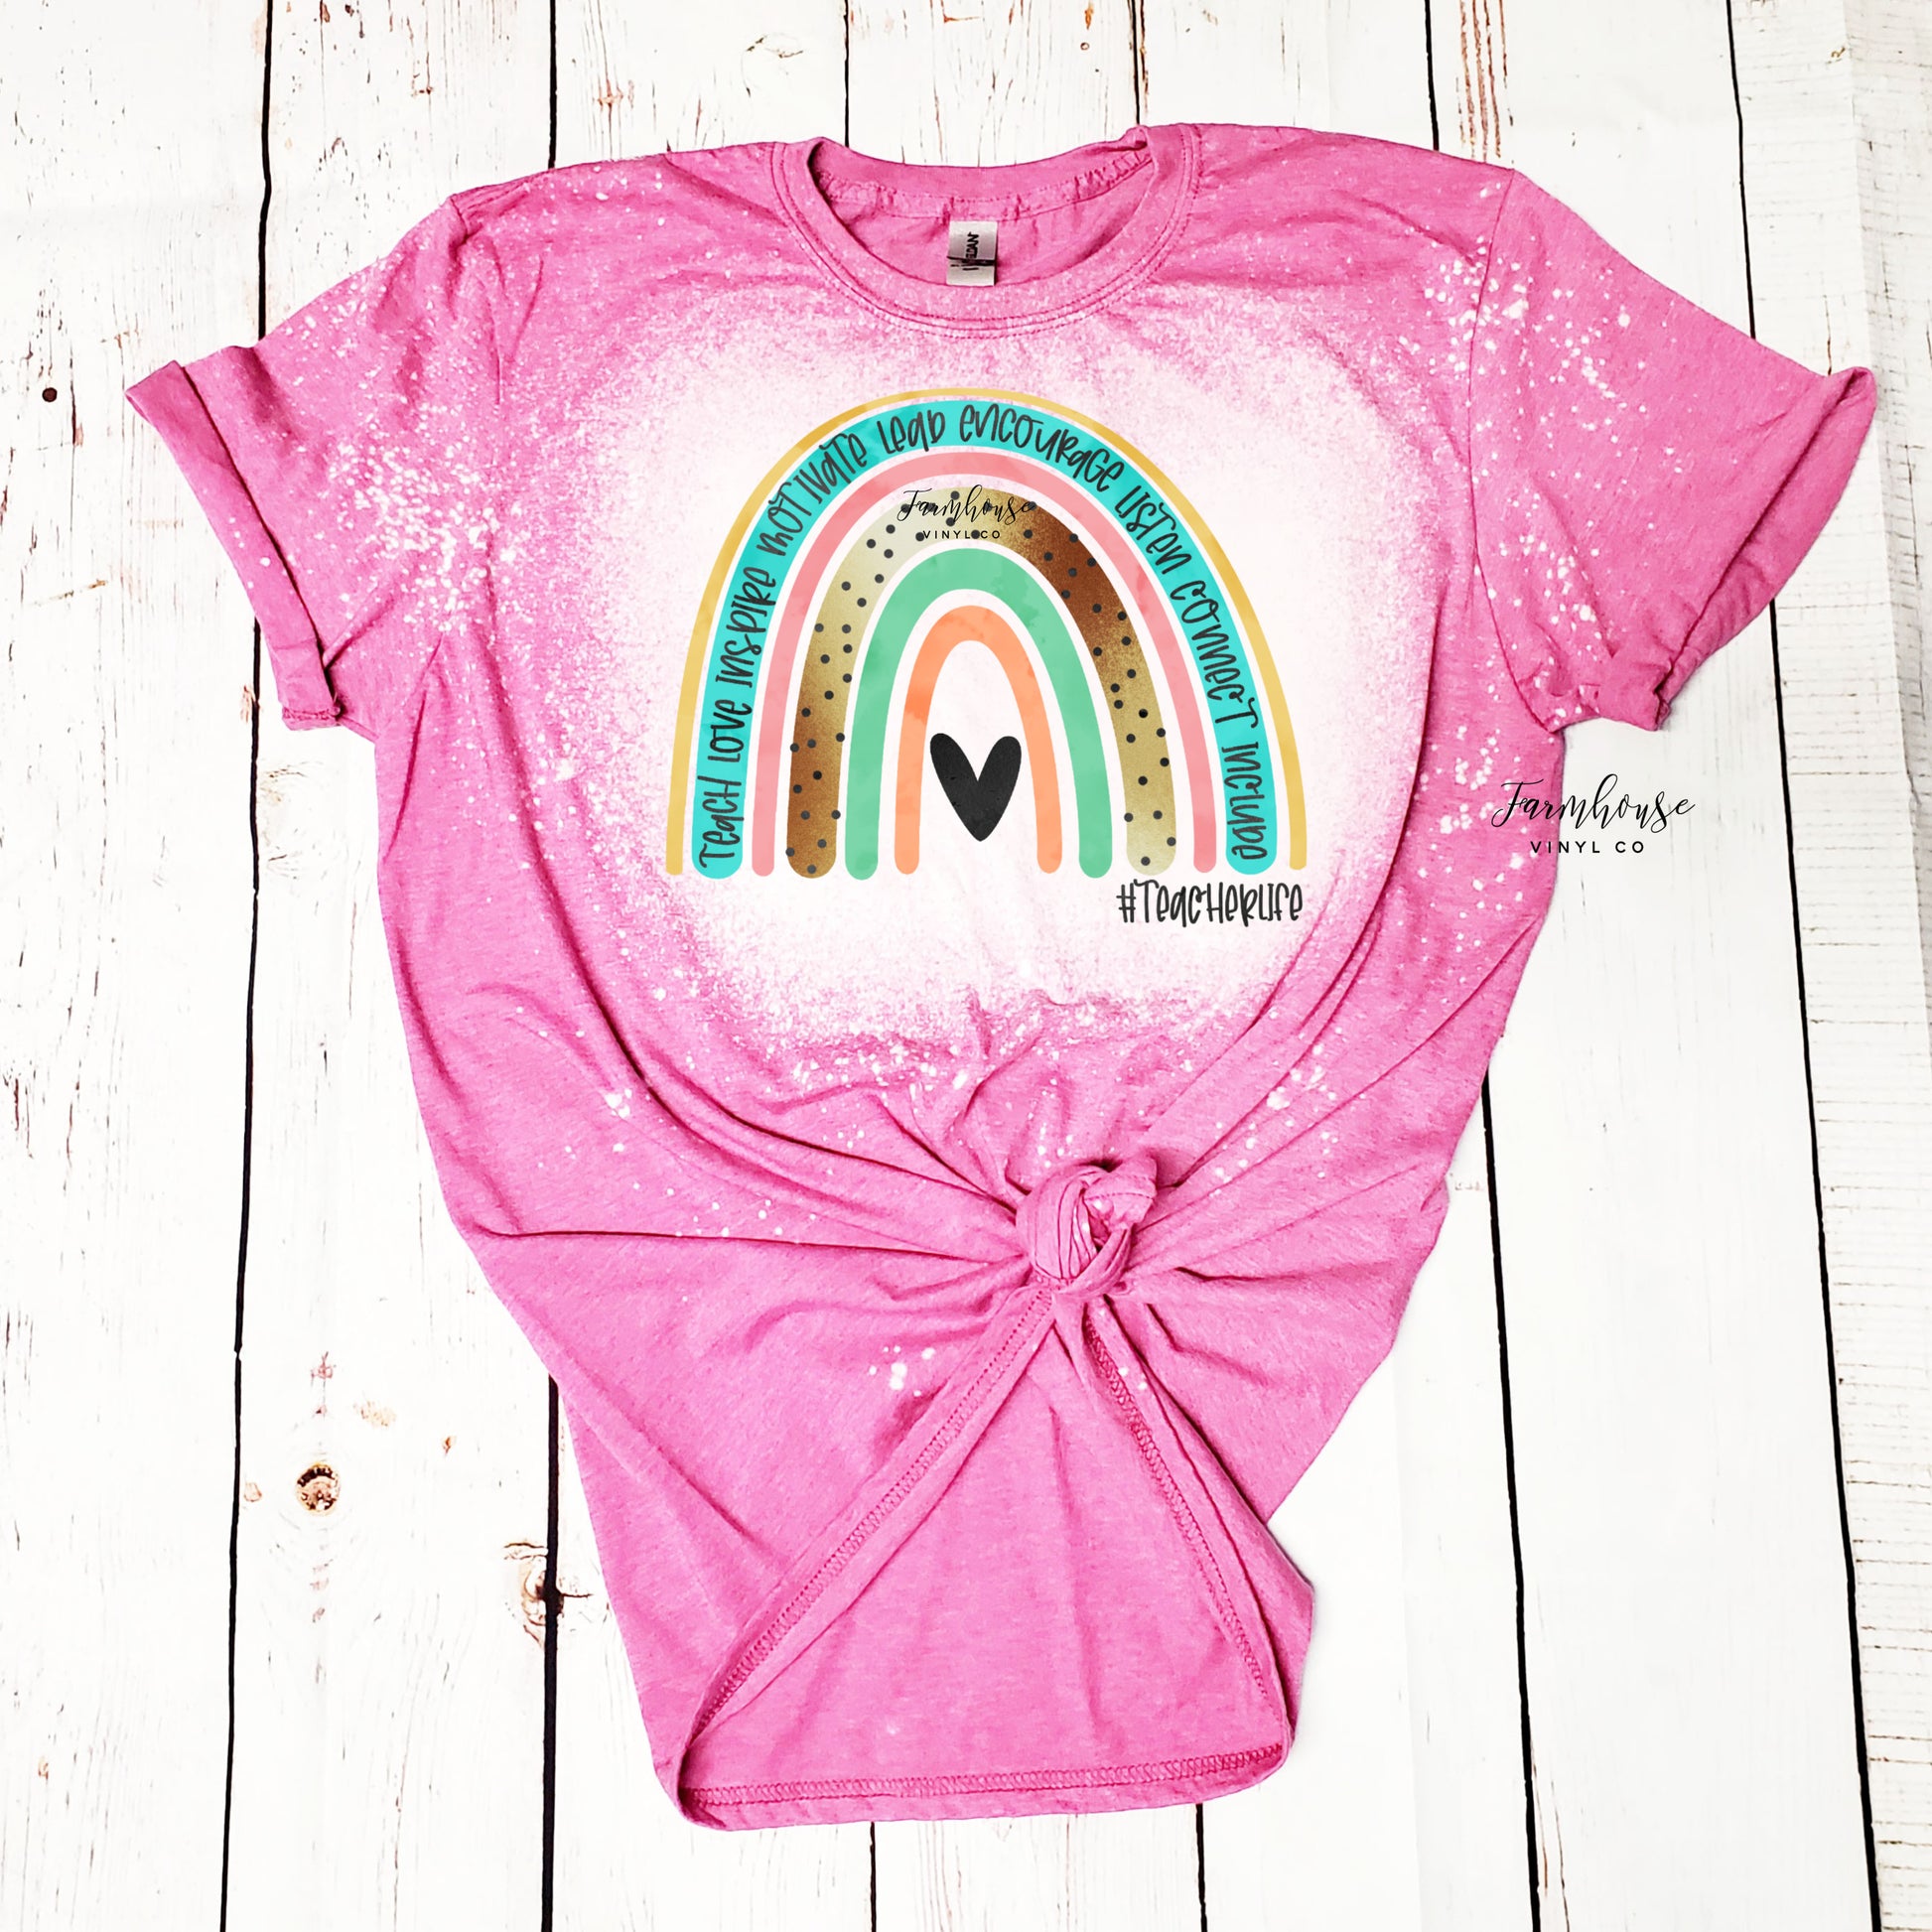 #TeacherLife Rainbow Shirt - Farmhouse Vinyl Co